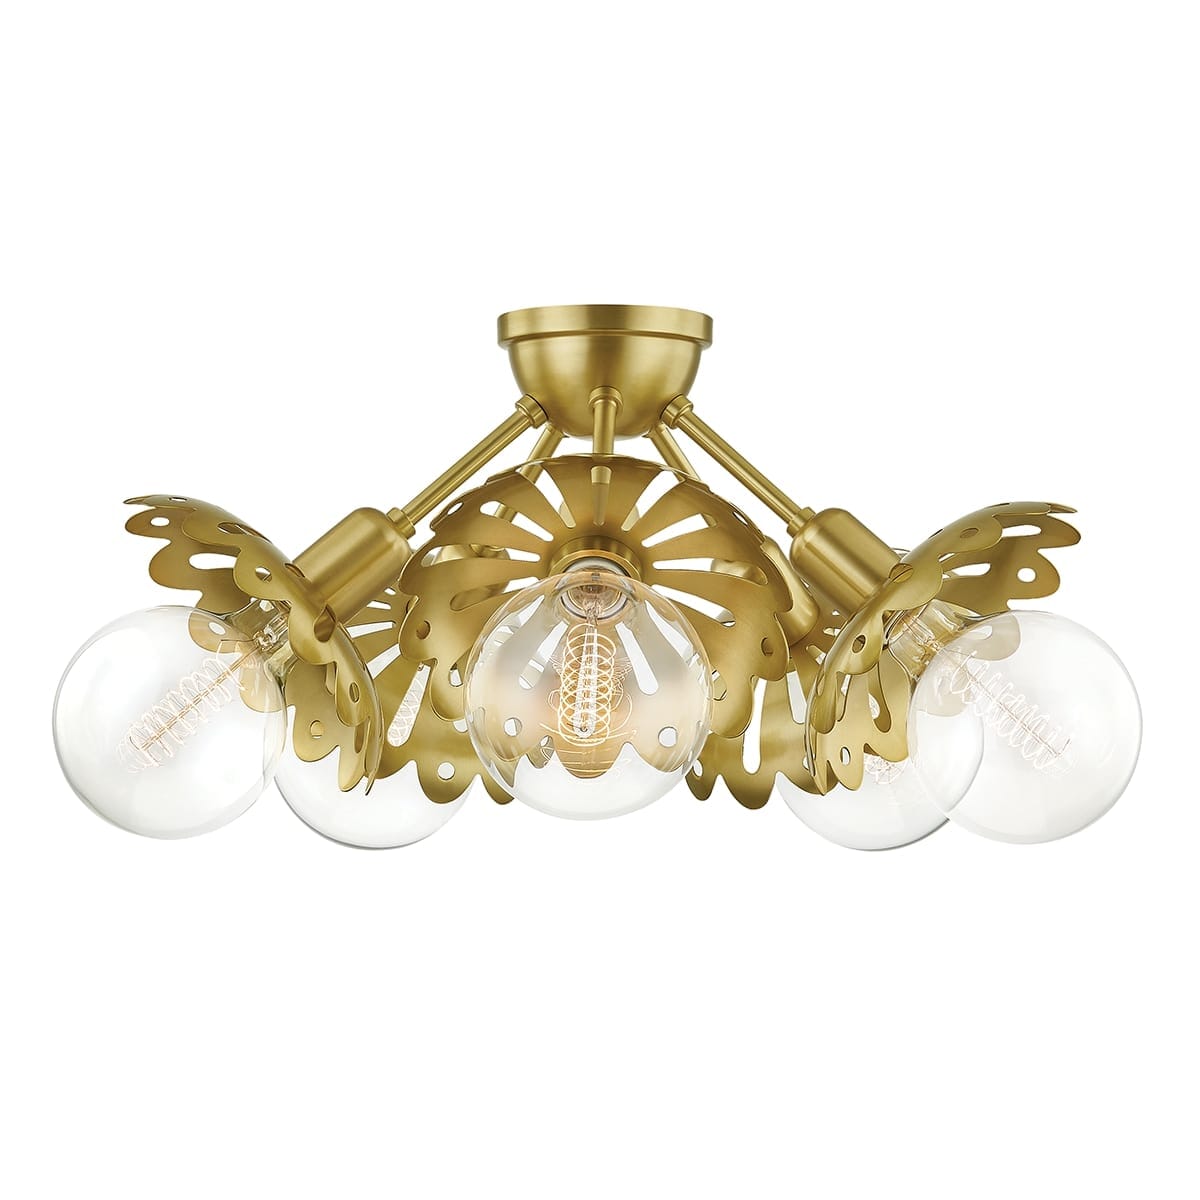 Mitzi Alyssa 5-Light Ceiling Light in Aged Brass